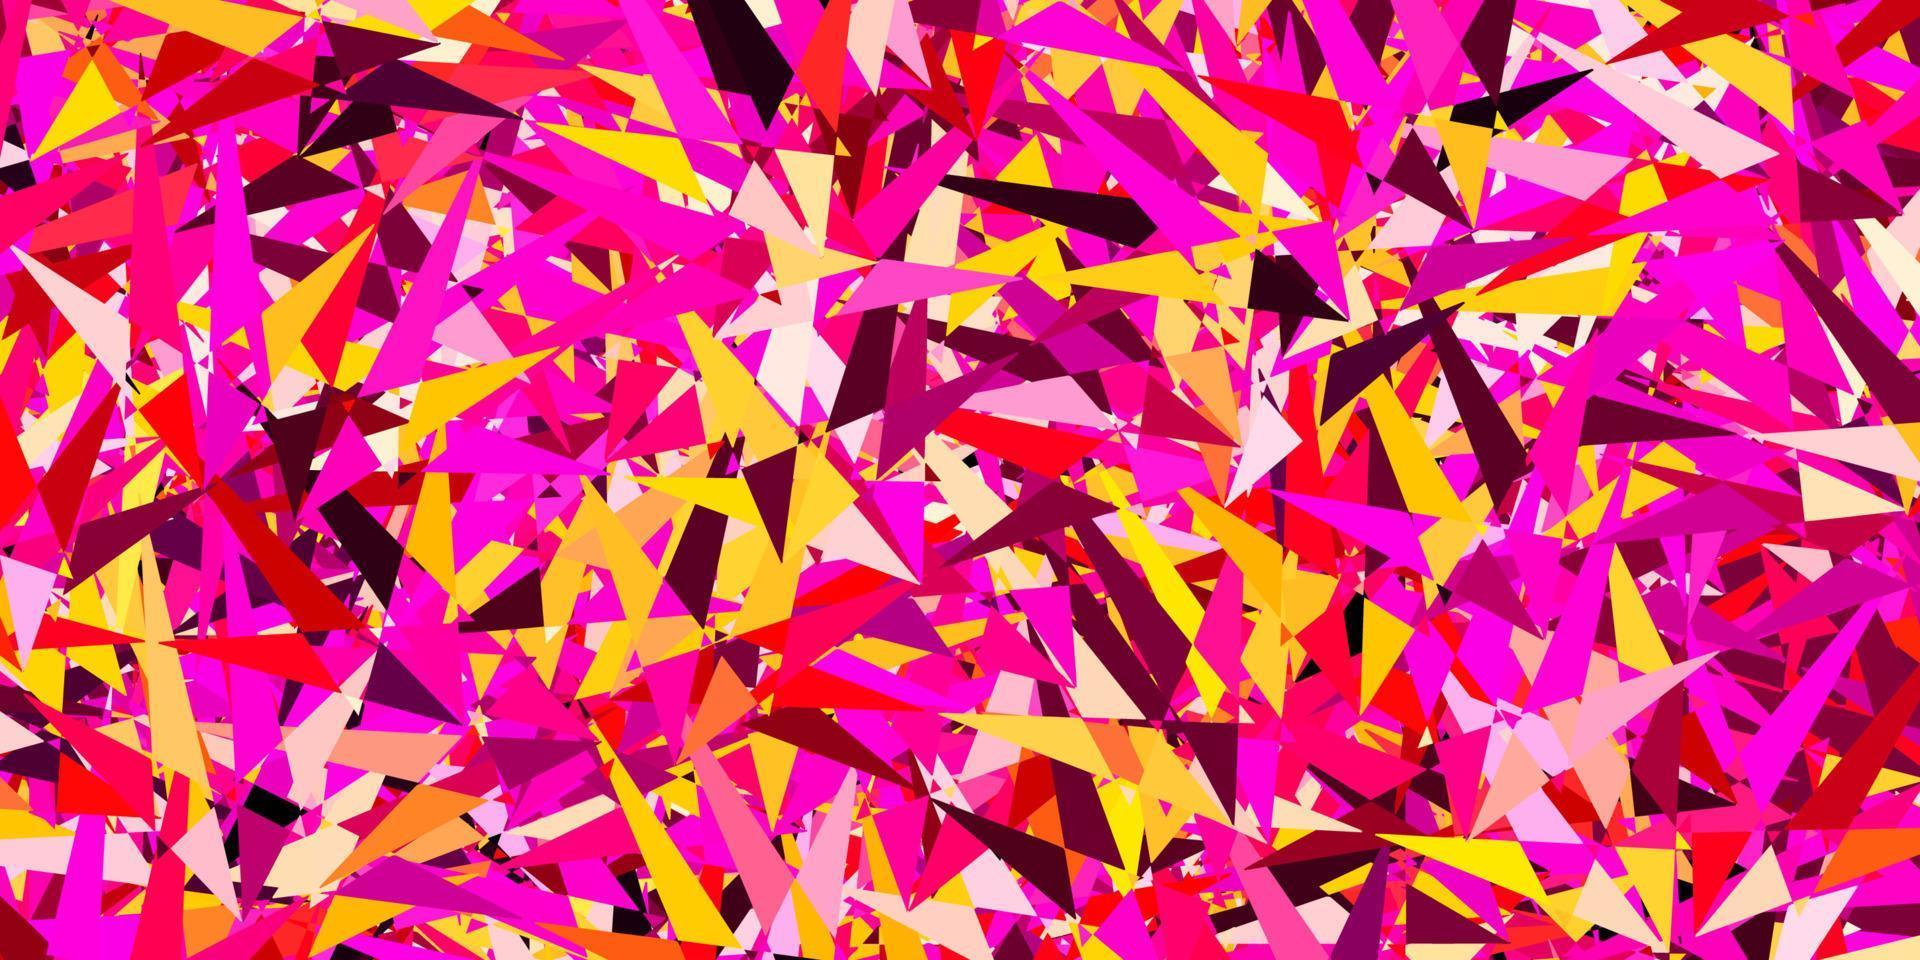 Plantilla de vector de color rosa oscuro, amarillo con cristales, triángulos.